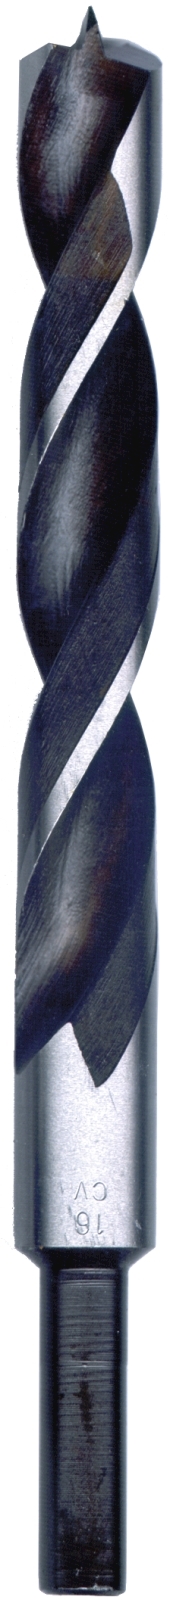 Silverline Holzspiralbohrer 8 mm 10er Set Bohrer Holzbohrer mit Zentrierspitze 